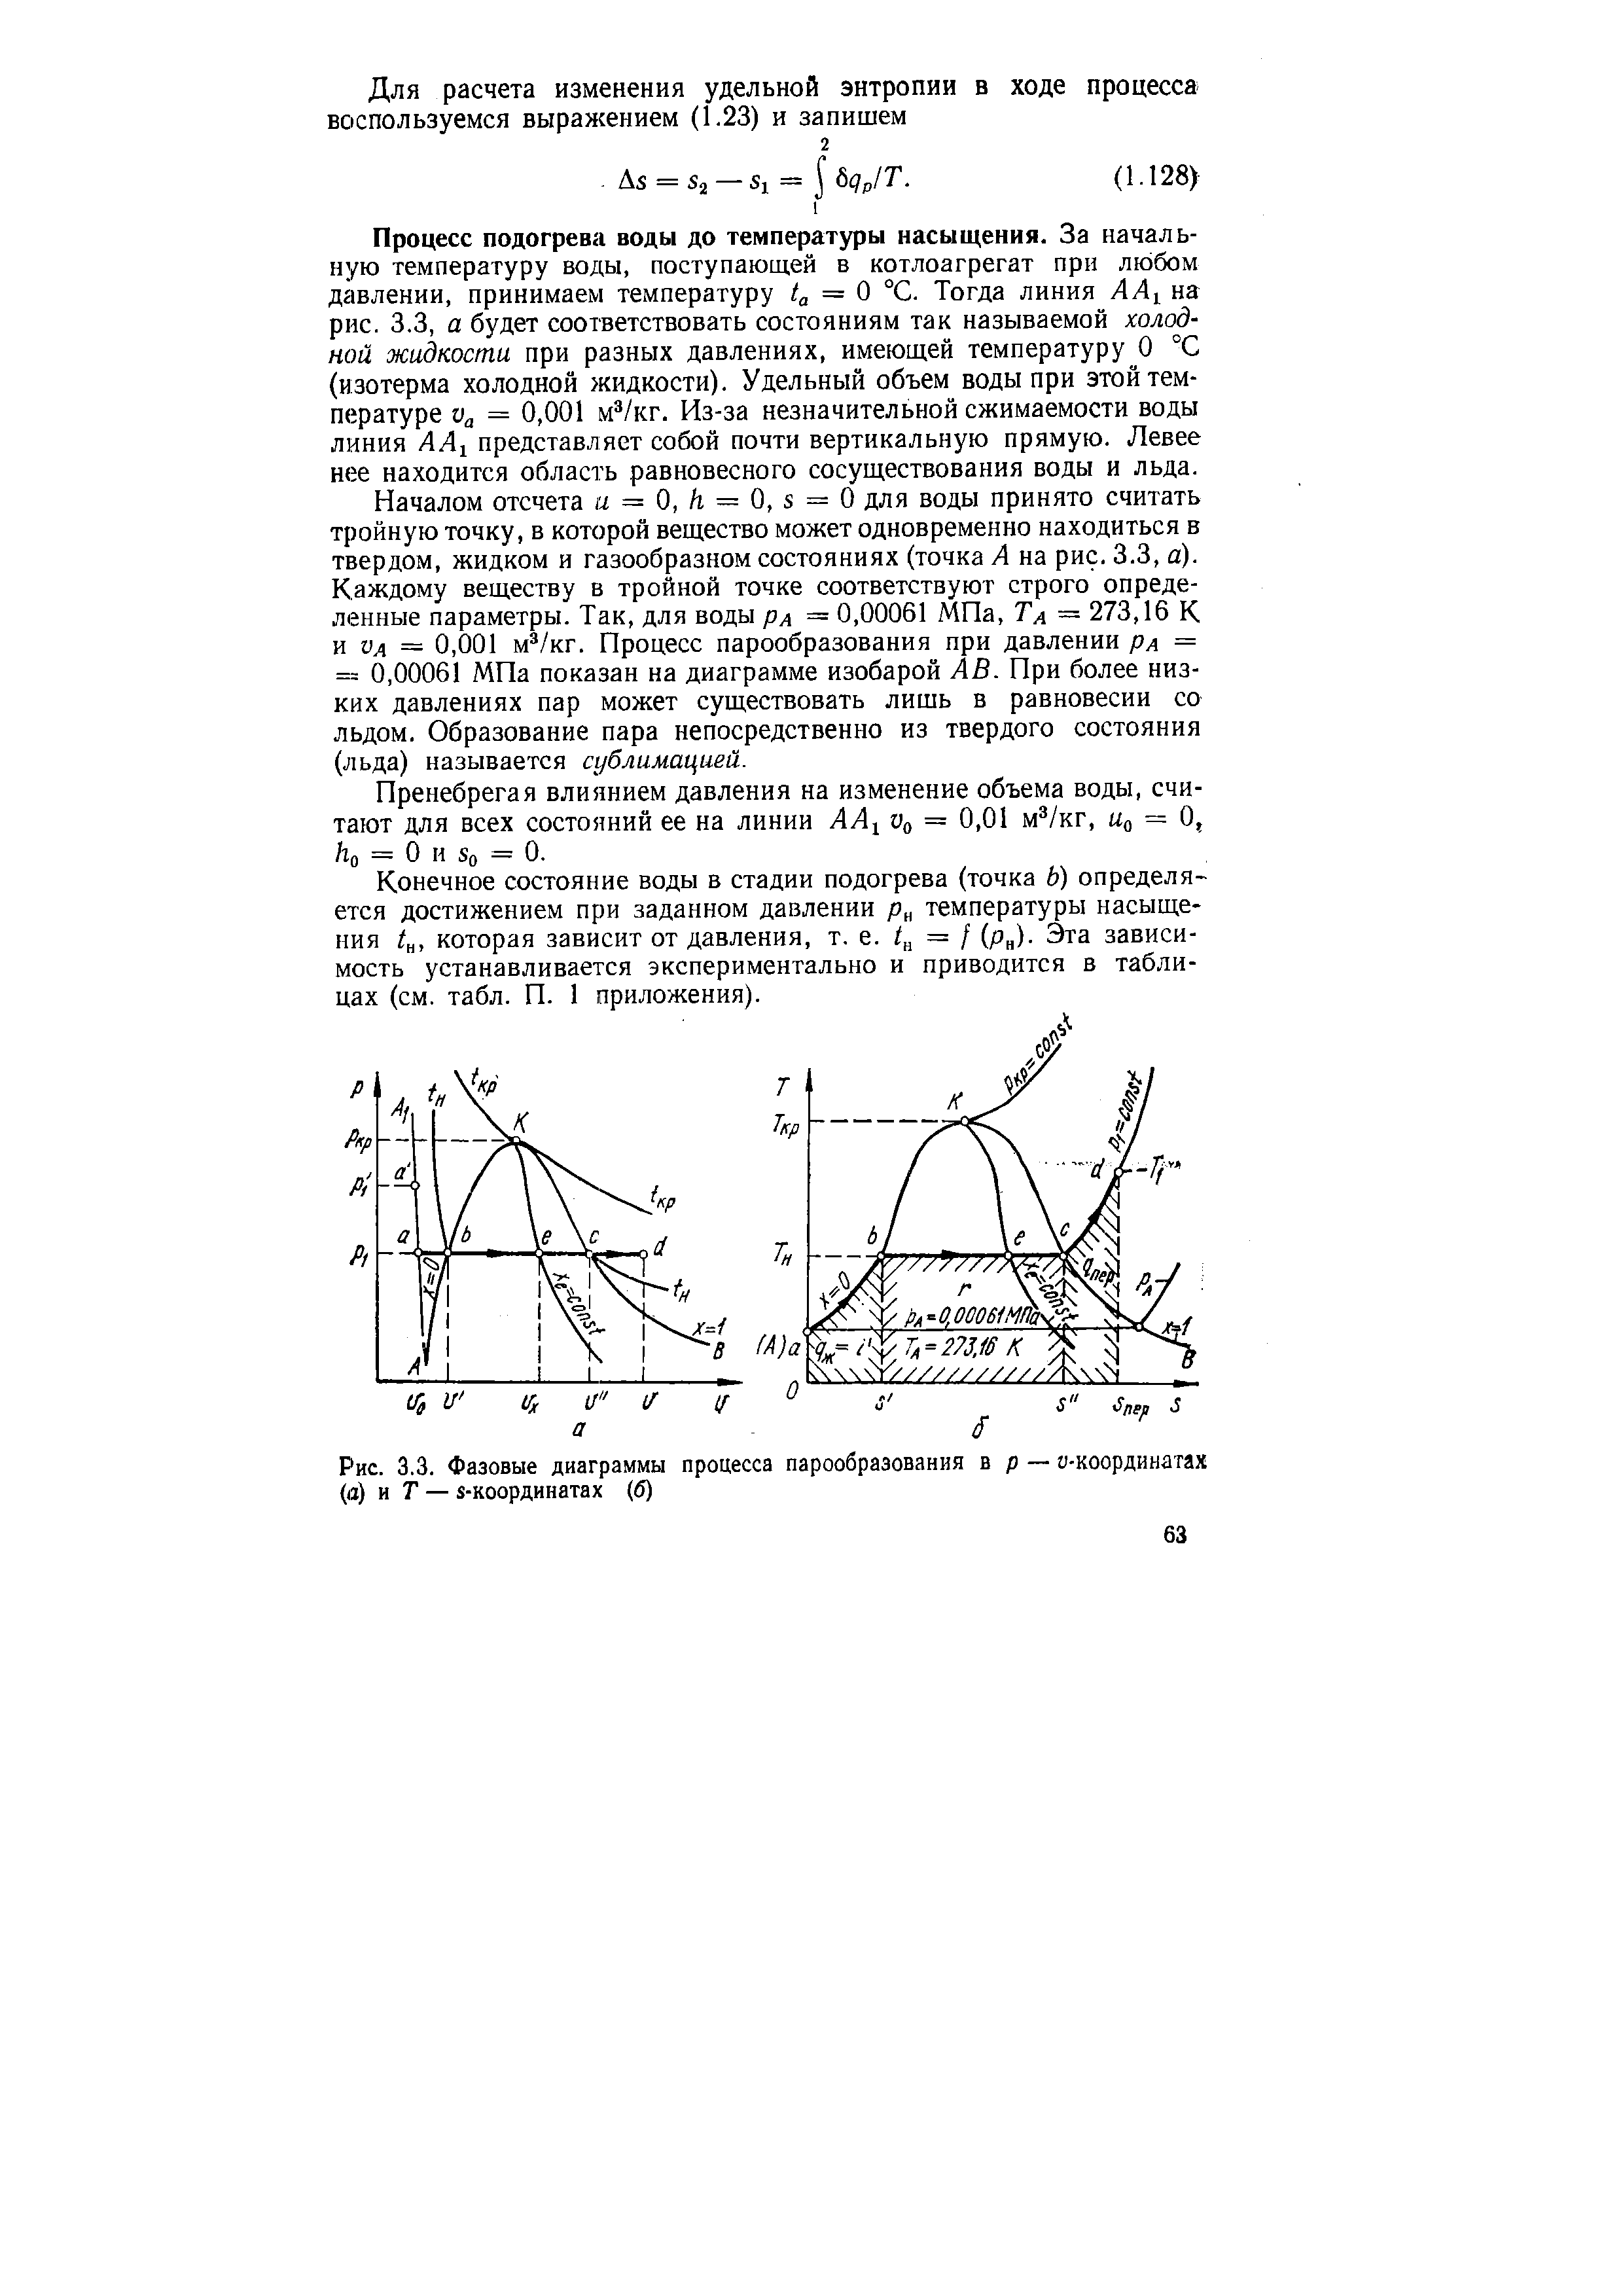 Рис. 3.3. Фазовые диаграммы процесса парообразования в р — а-координатах (а) и Т — з-координатах (б)
